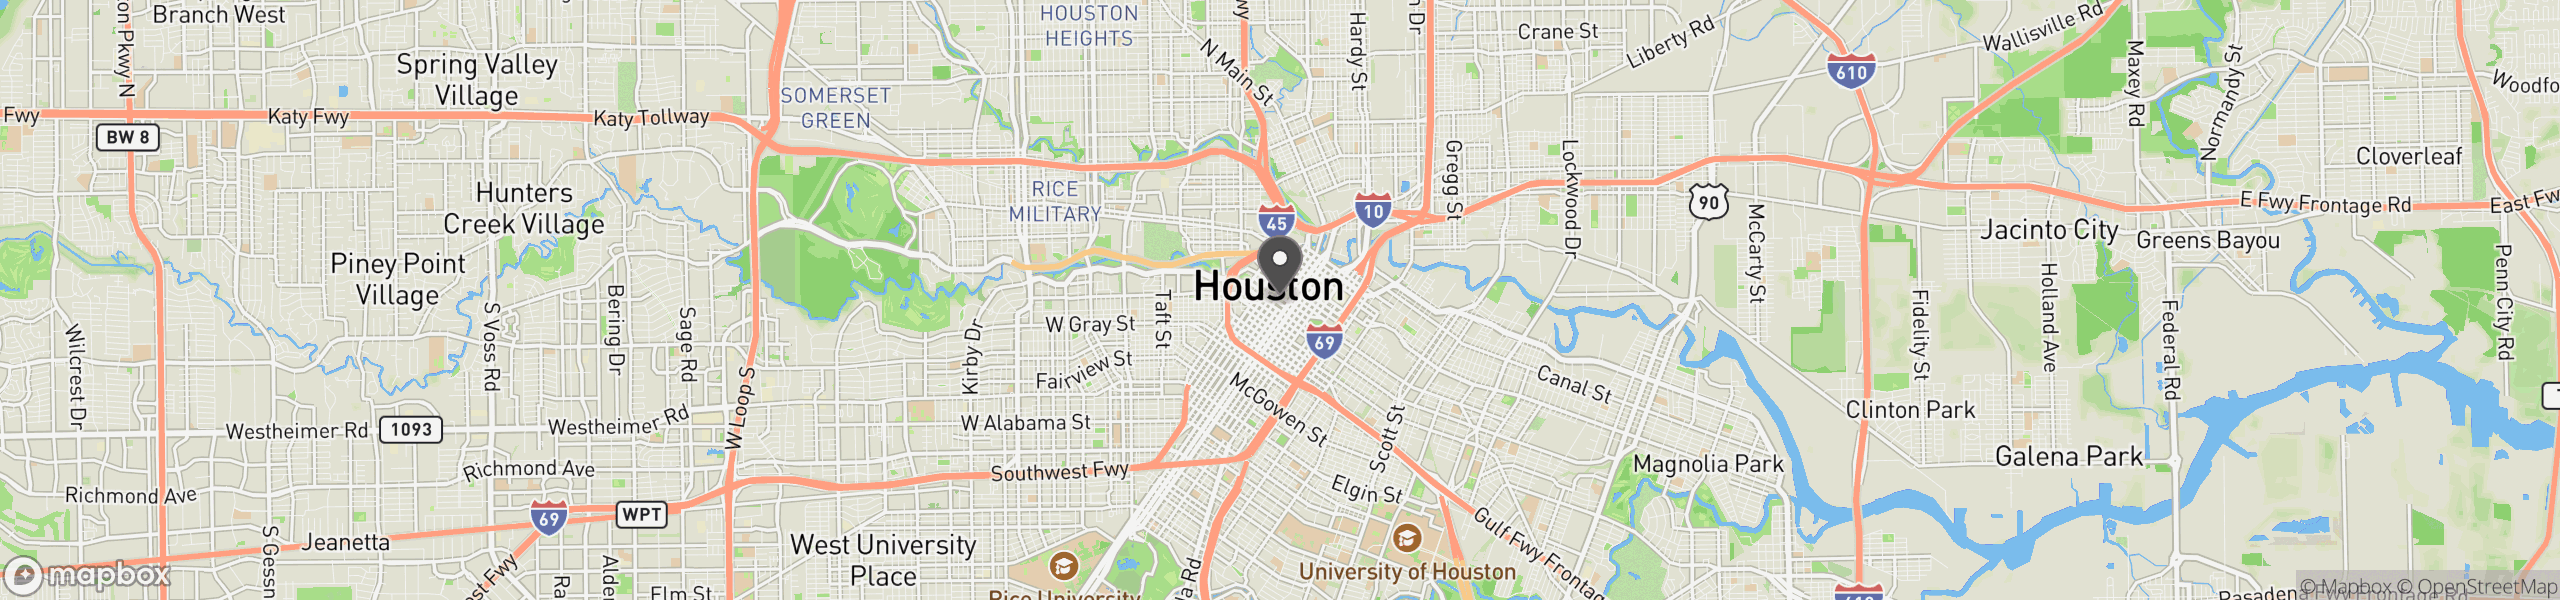 Houston, TX 77002